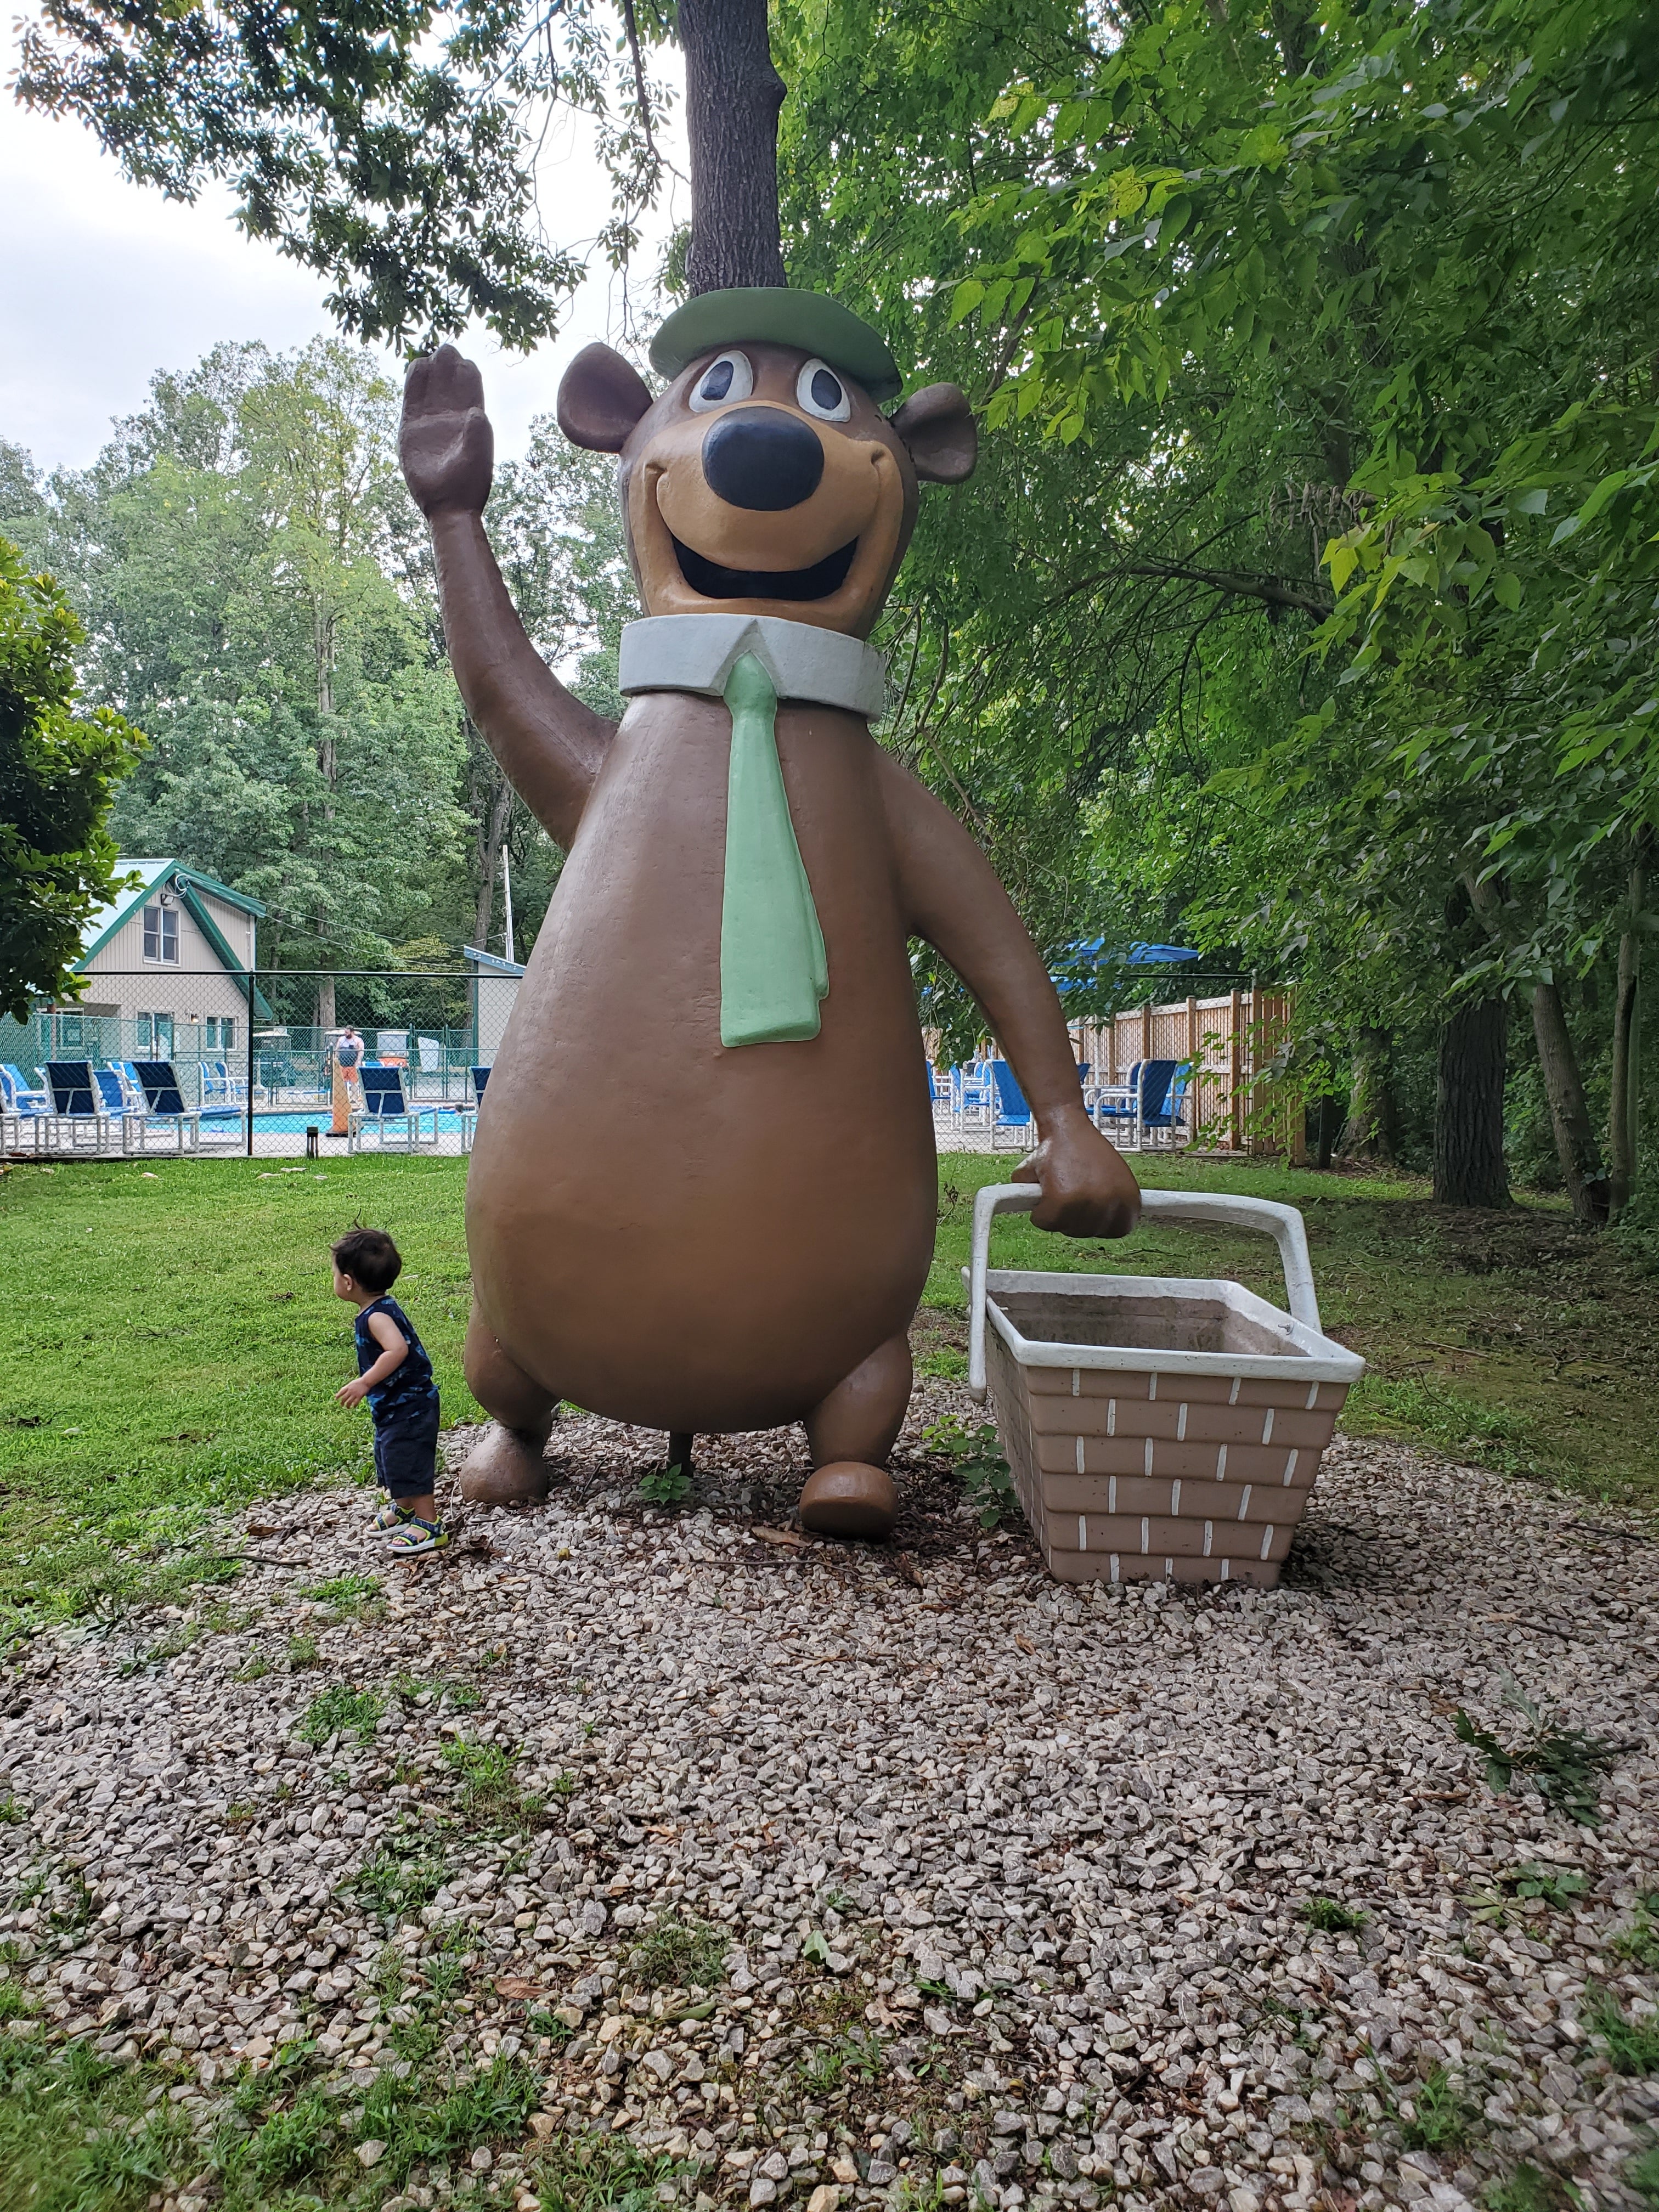 Yogi Bear's Jellystone Park in Hagerstown MD